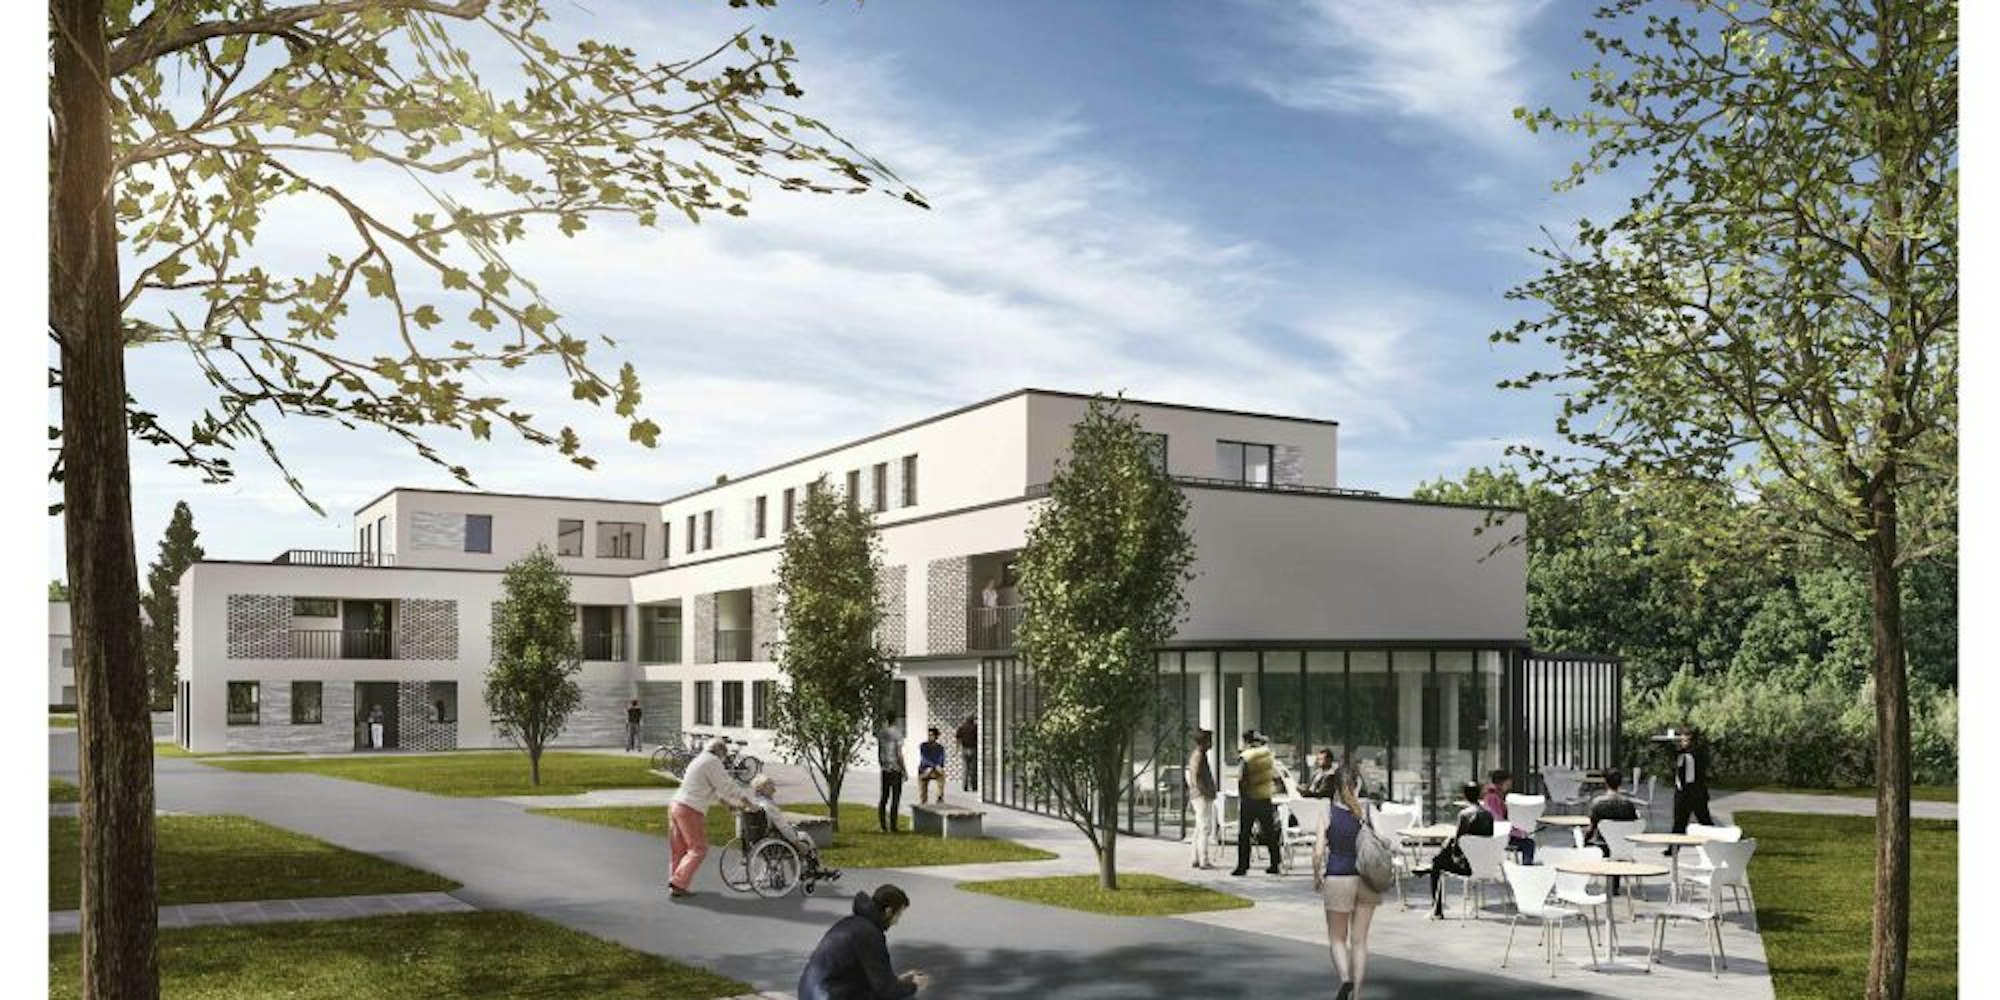 Neben der LVR-Donatusschule soll ein inklusives Wohnquartier entstehen.